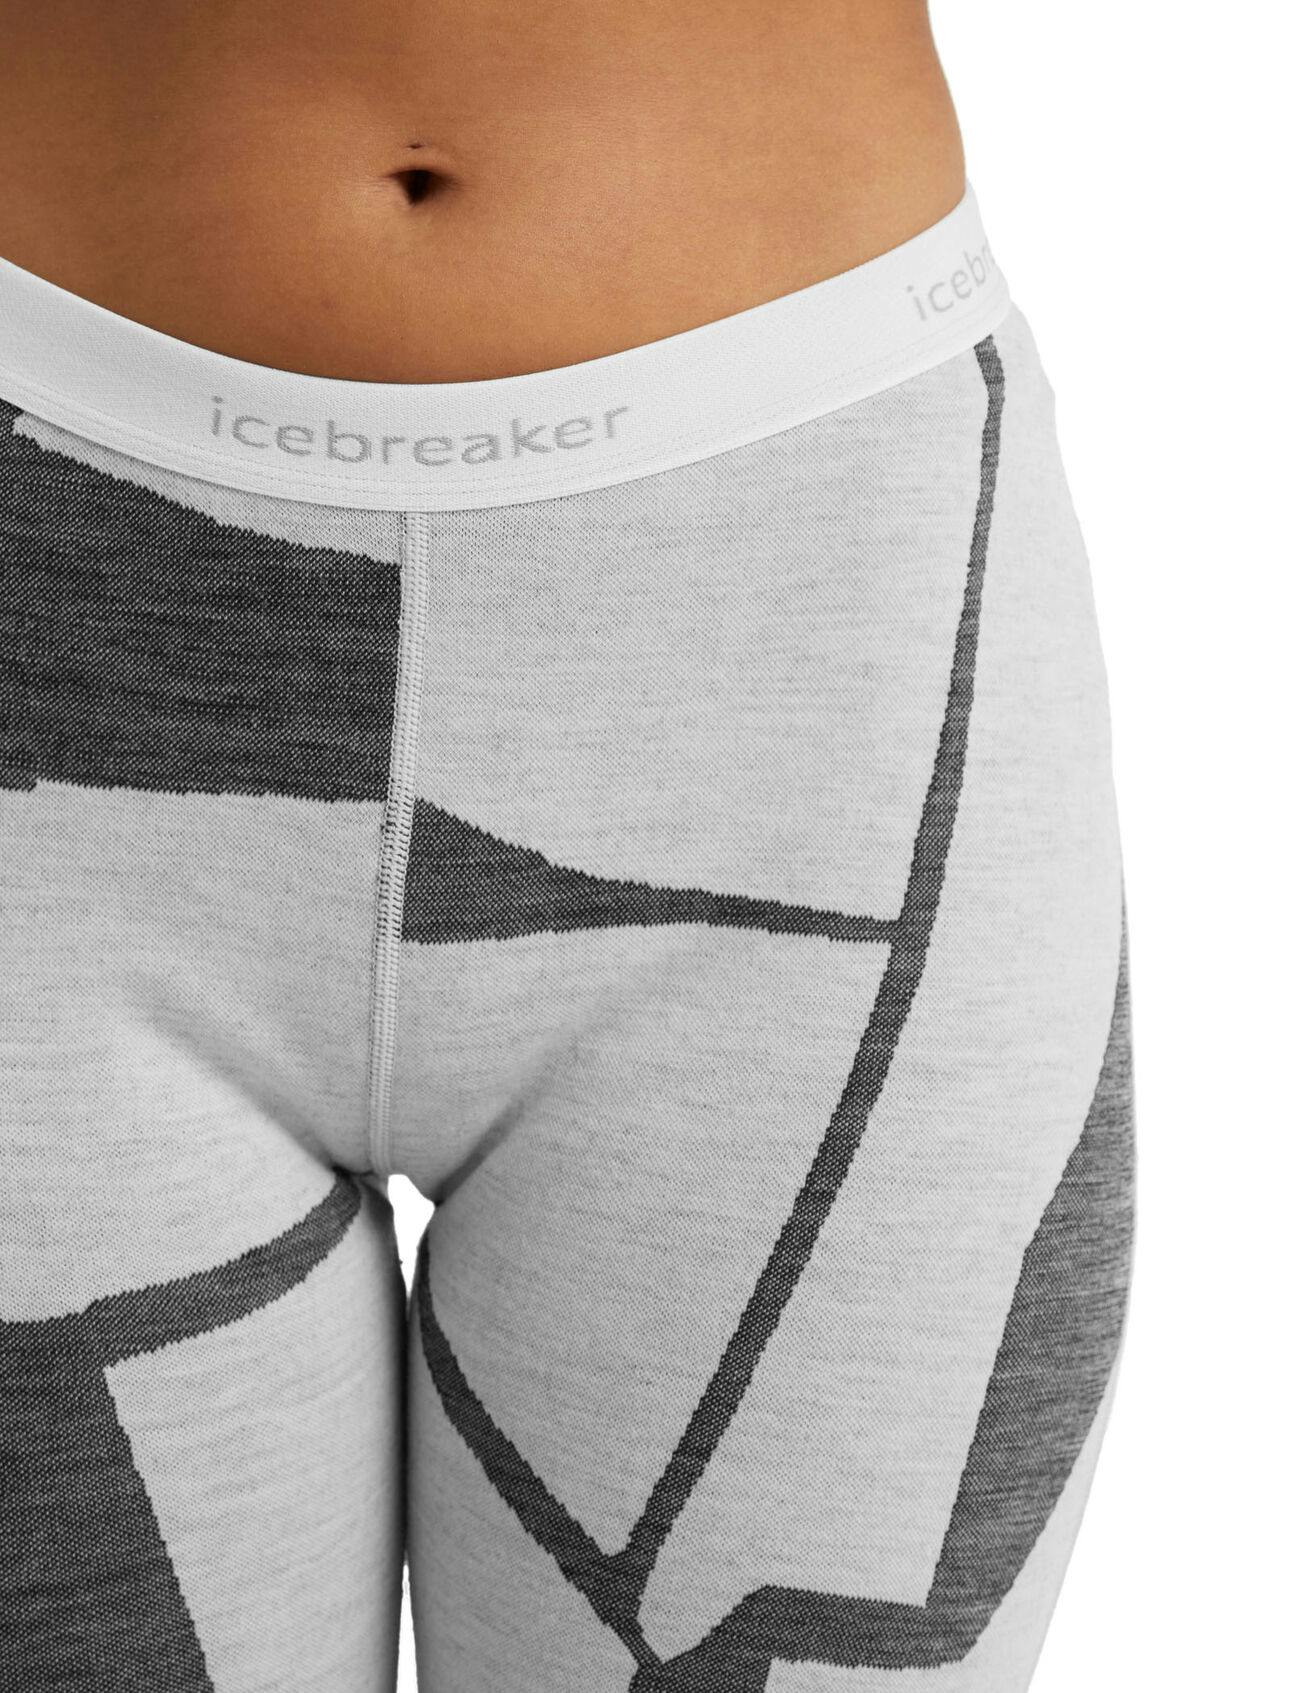 Women's Icebreaker 250 Vertex Leggings Baselayer